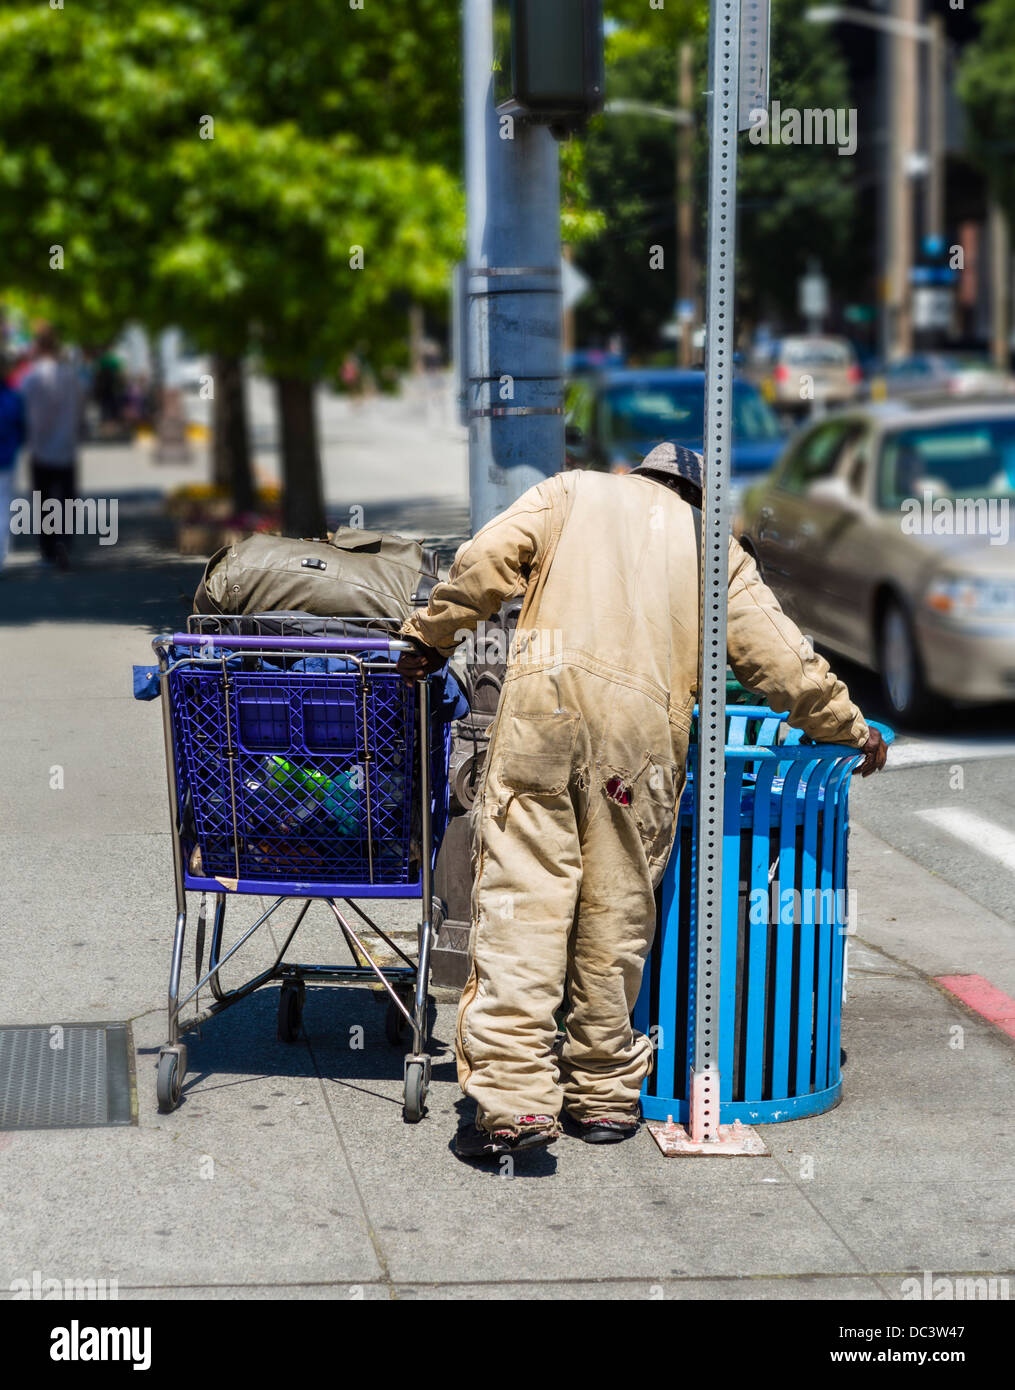 Uomo senza tetto con un carrello lavaggio in un cestino, Seattle, Washington, Stati Uniti d'America Foto Stock